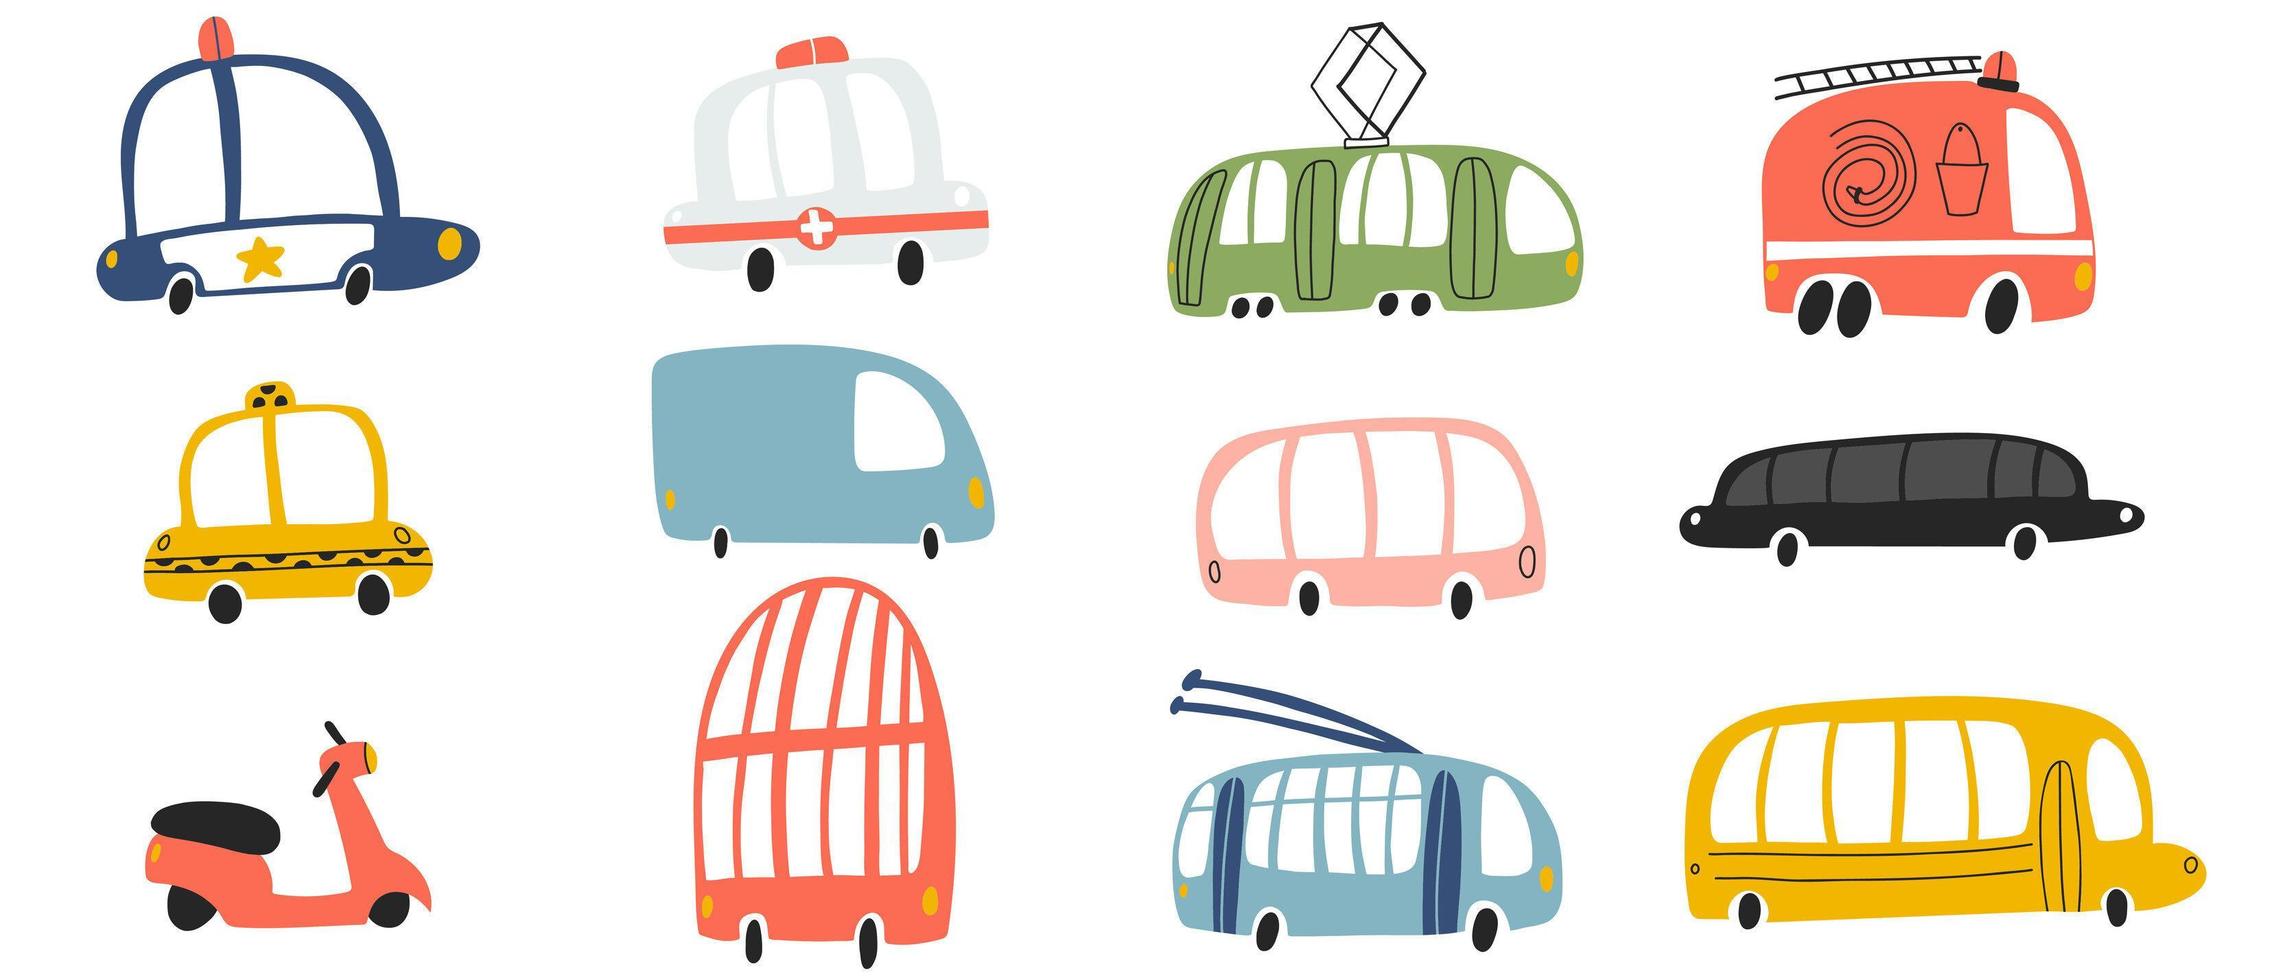 illustrazione vettoriale di tram, minibus, taxi, ambulanza, trolley, scooter, autobus passeggeri, camion motore, auto della polizia, scuolabus, limousine, due piani in stile cartone animato disegnato a mano